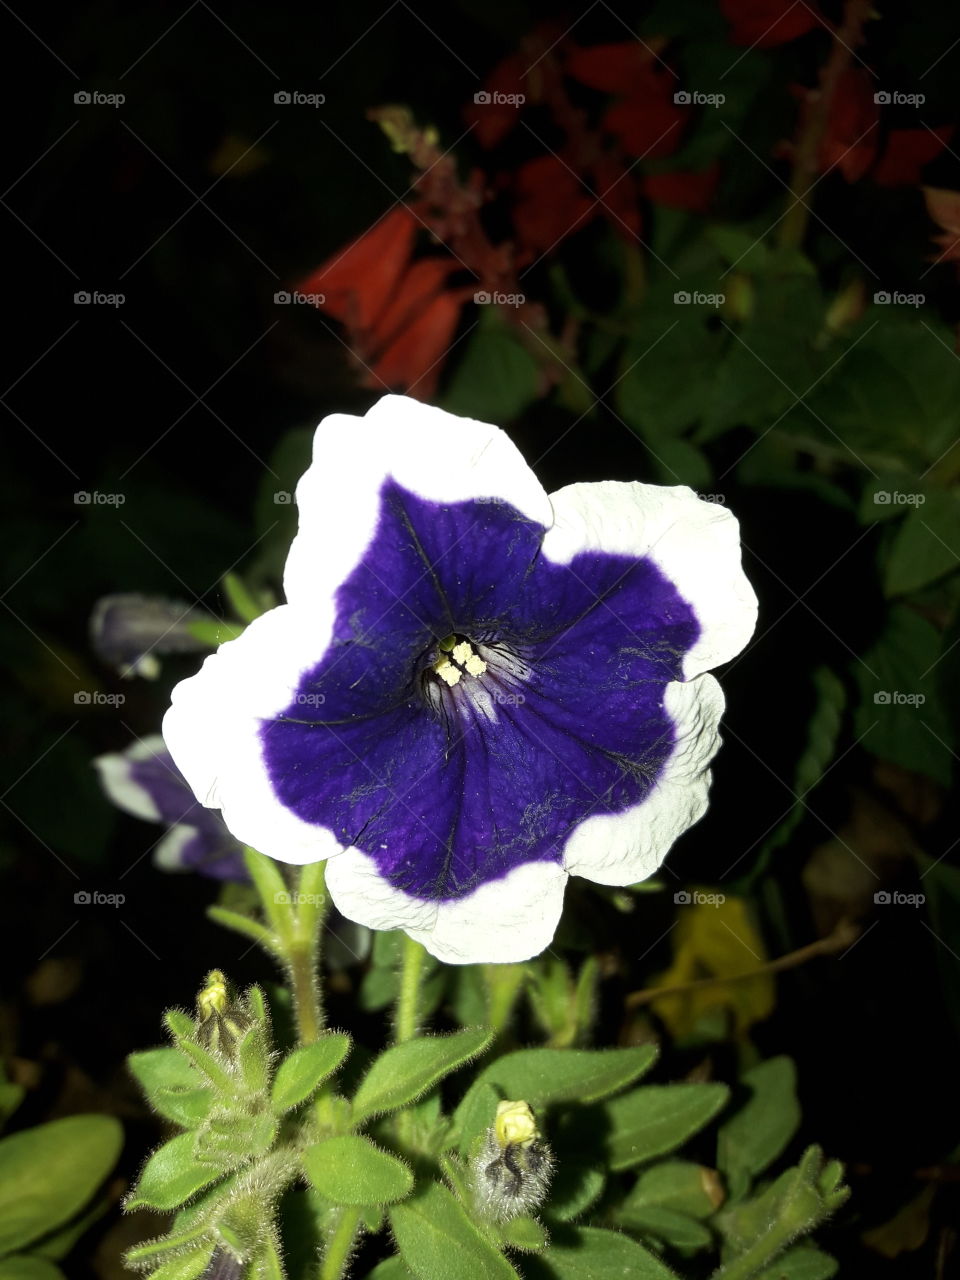 blue purple flora has two colors; white & blue purple.